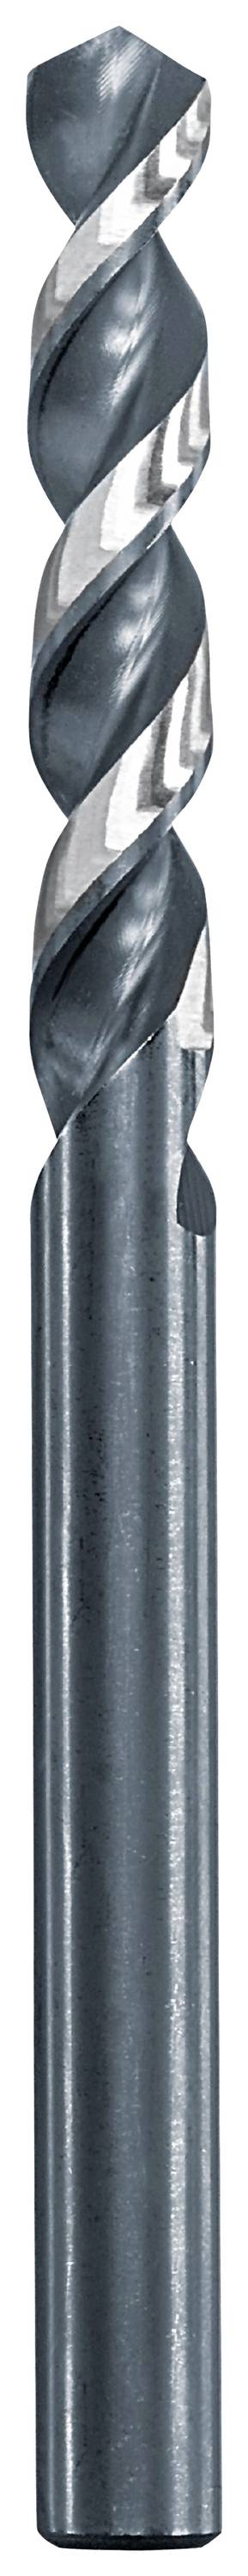 KWB 258655 Metall-Spiralbohrer 5.5 mm Gesamtlänge 93 mm 1 St.